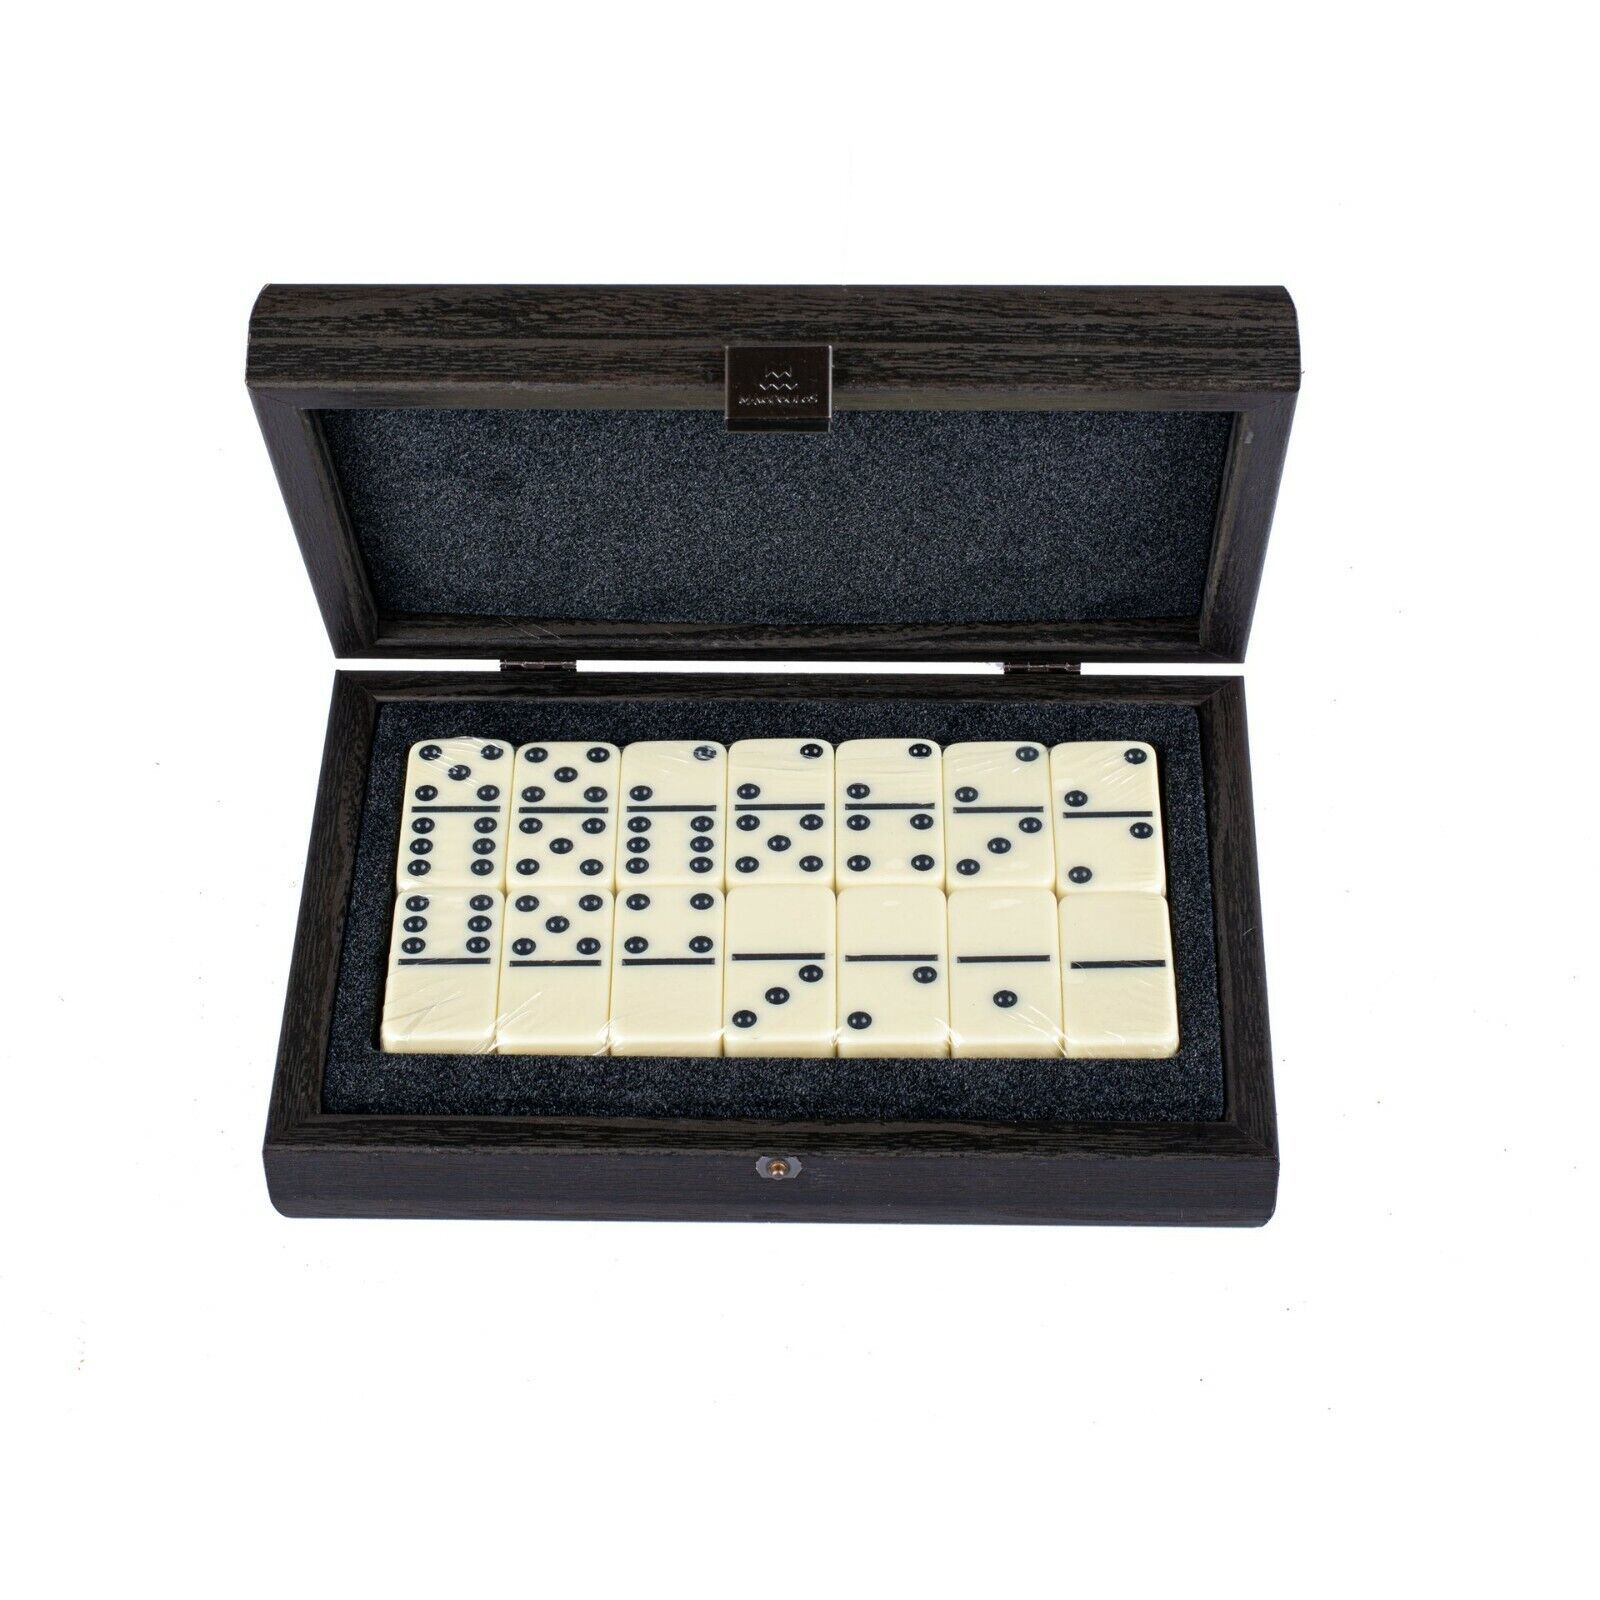 domino / Dominoes Set in BLACK case - Premium quality domino tiles - $61.86